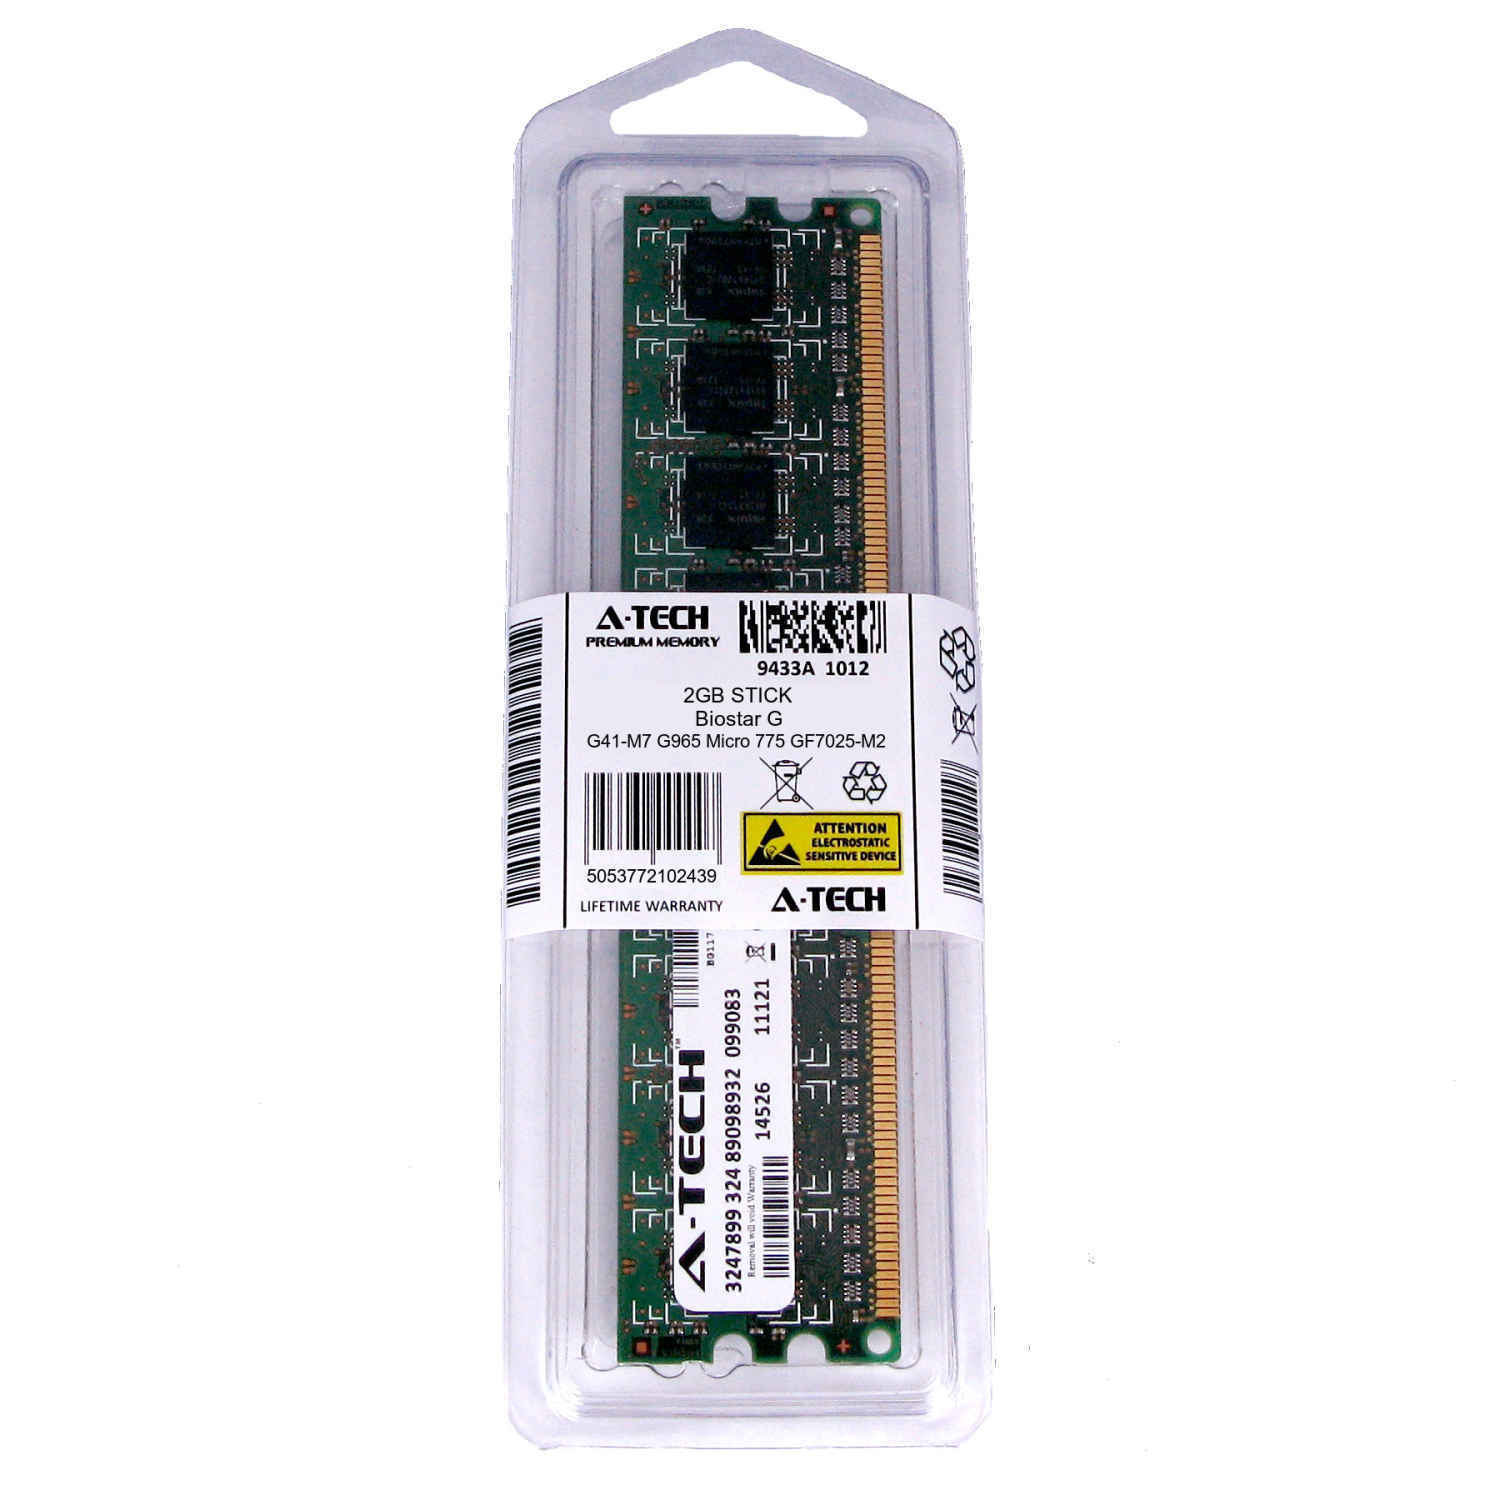 2GB DIMM Biostar G41-M7 G965 Micro 775 GF7025-M2 GF7025-M2 TE Ram Memory